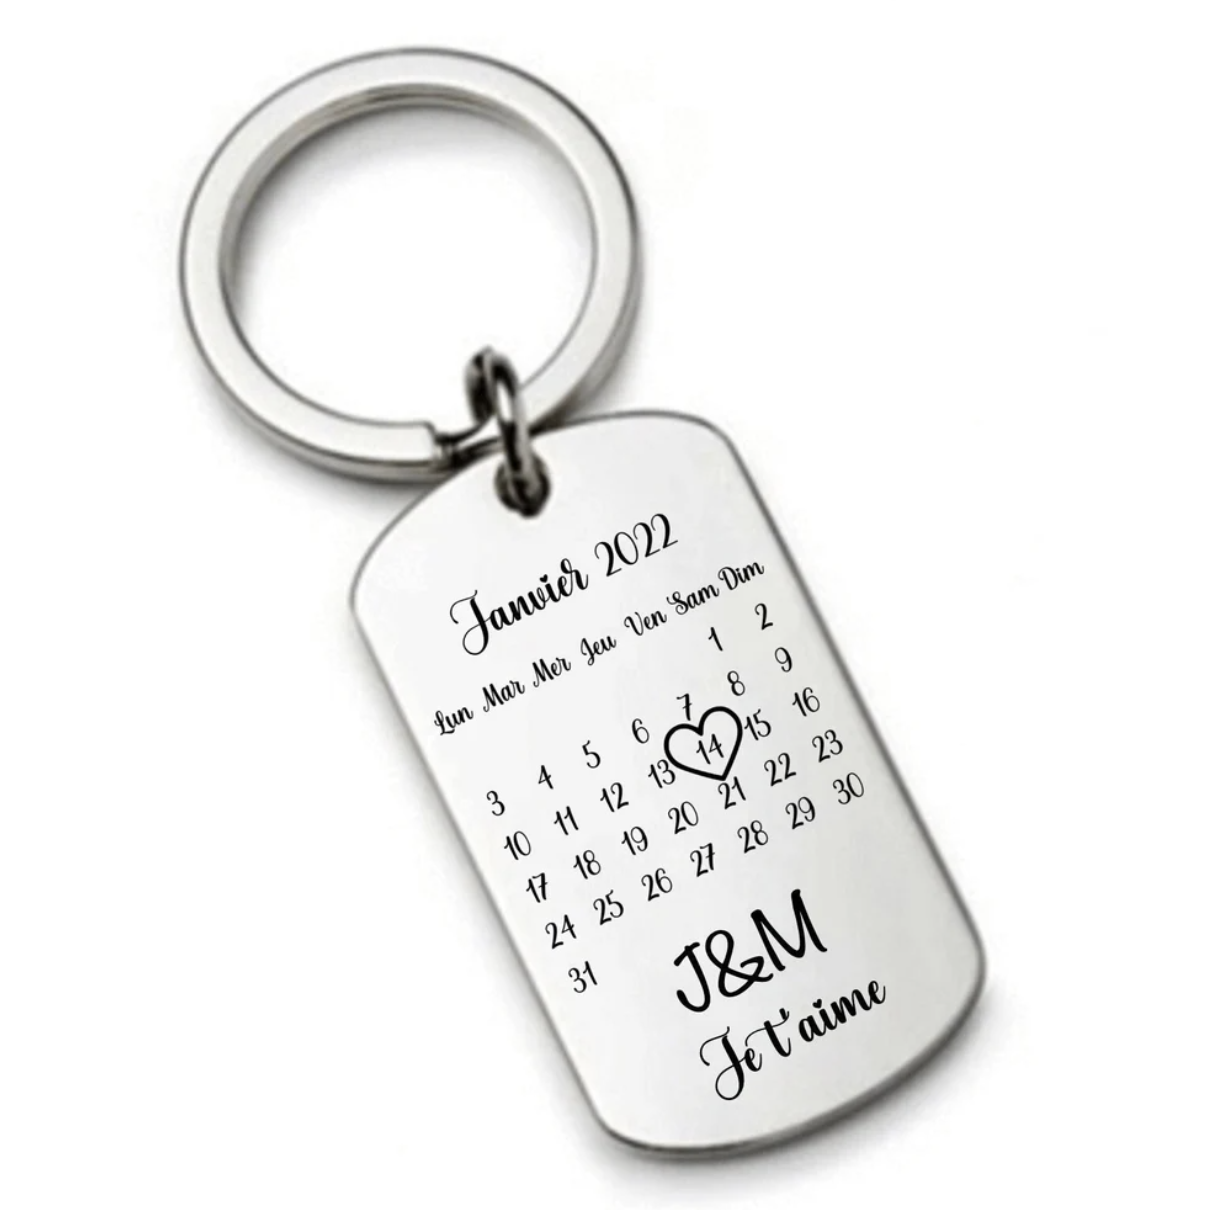 Porte clé personnalisé calendrier date en métal acier inoxydable, cadeau de rencontre, de naissance, d\'anniversaire, saint Valentin